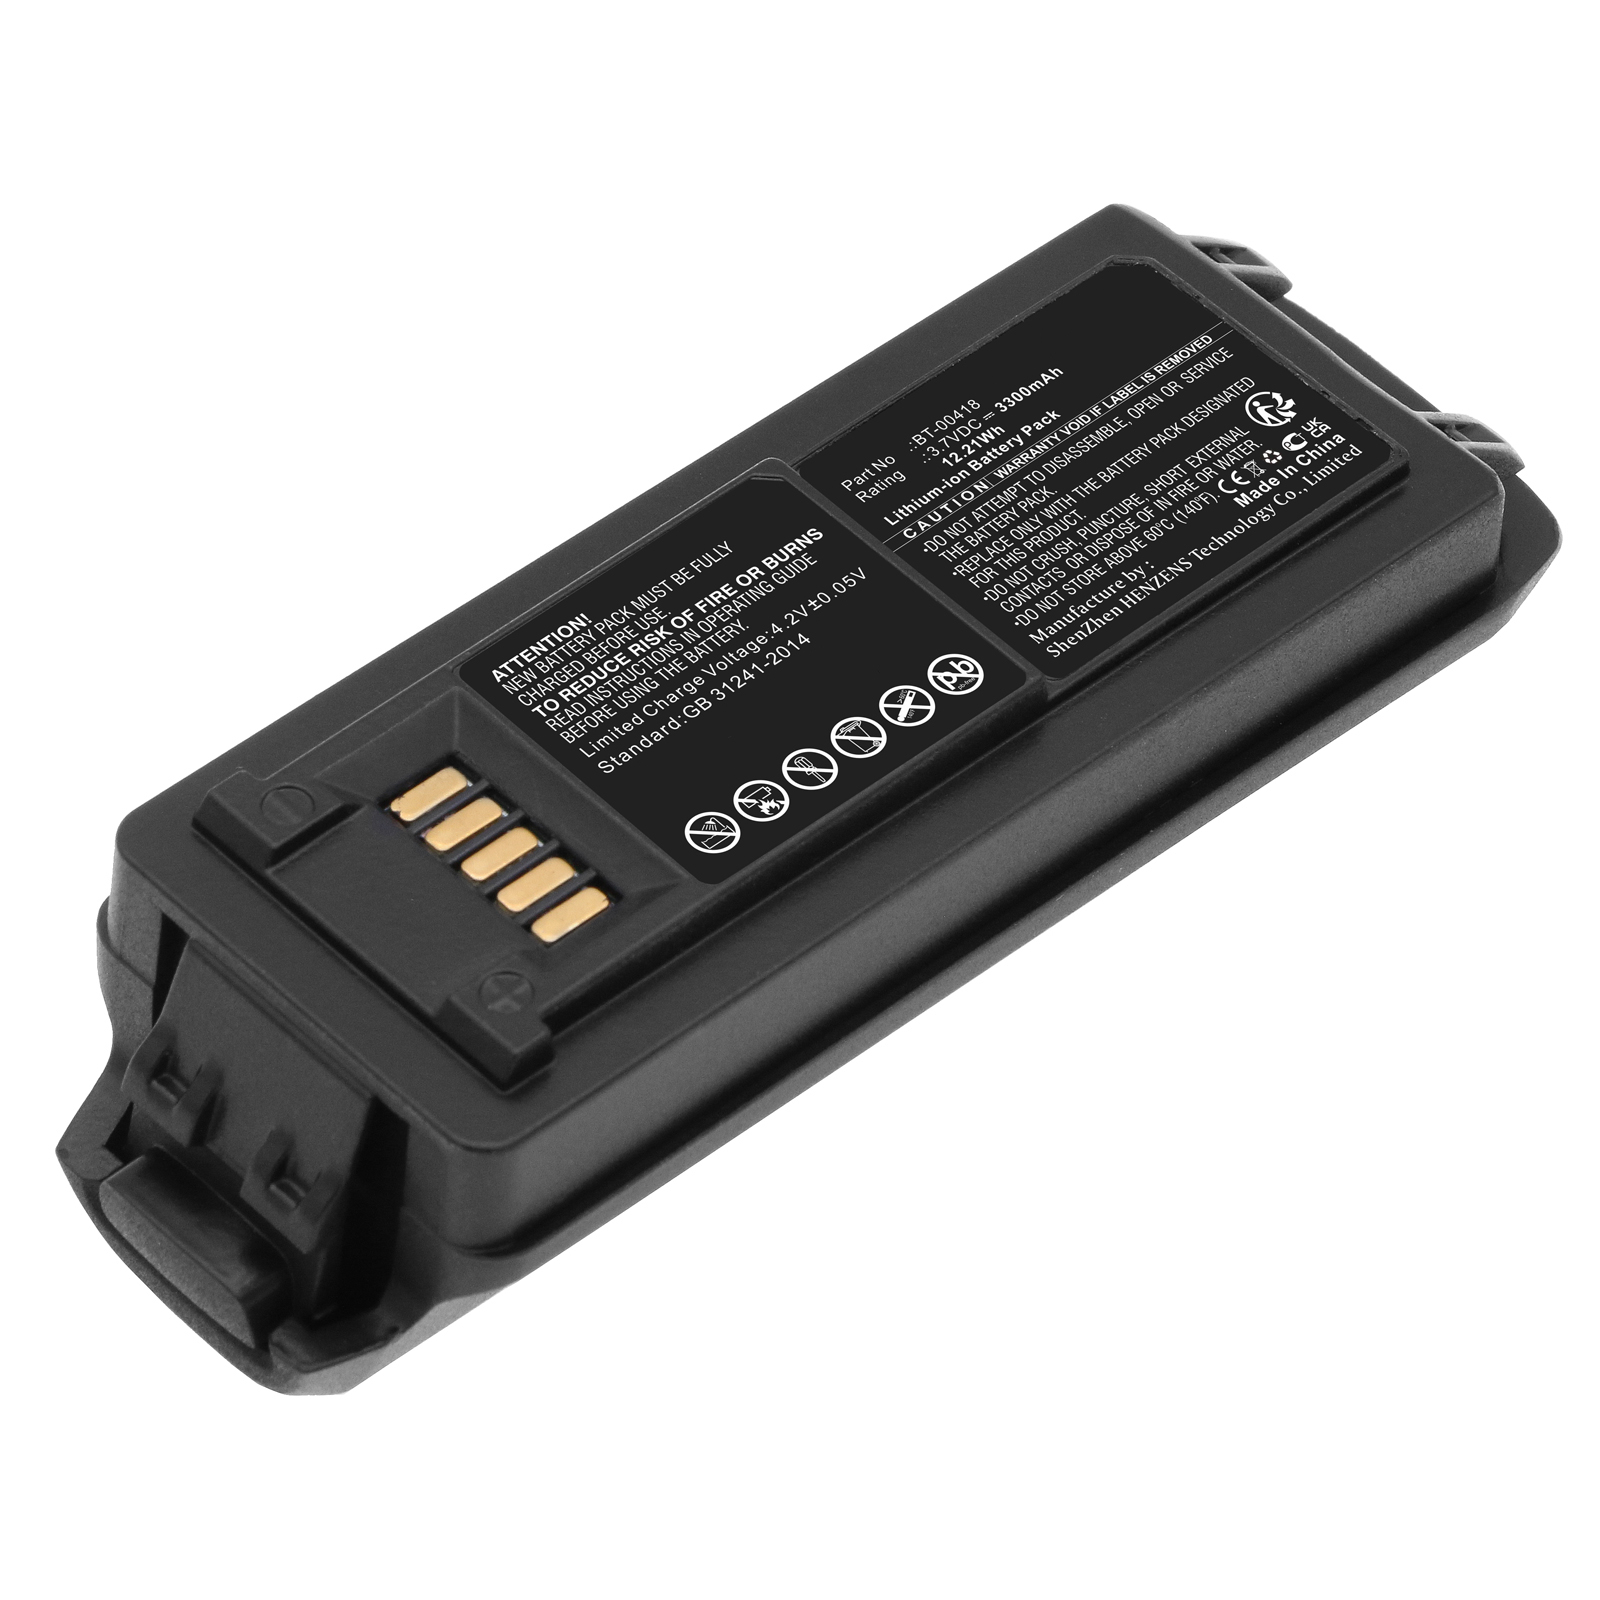 Synergy Digital Barcode Scanner Battery, Compatible with Zebra BT-00418 Barcode Scanner Battery (Li-ion, 3.7V, 3300mAh)